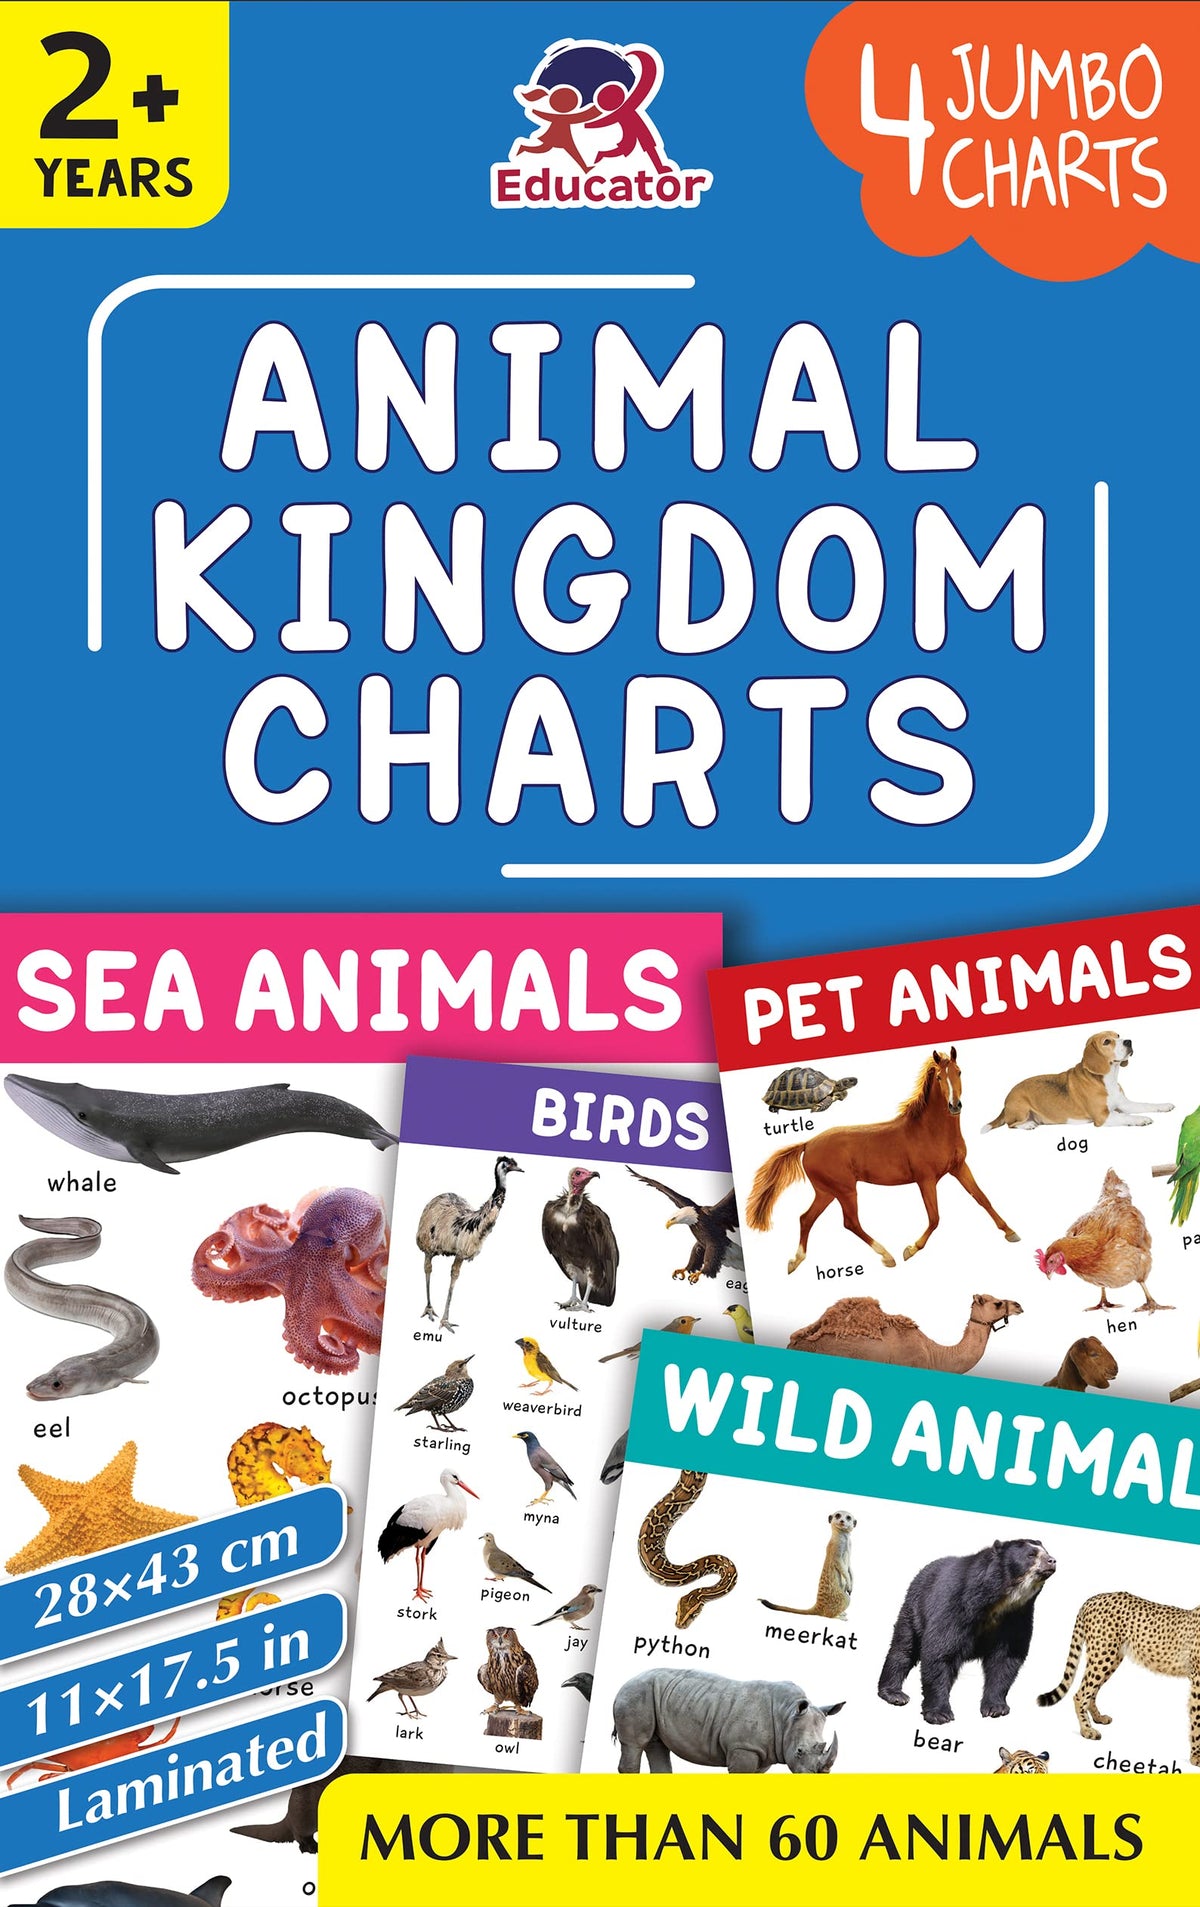 Pegasus Animal Kingdom Charts - 4 Jumbo Charts for Kids